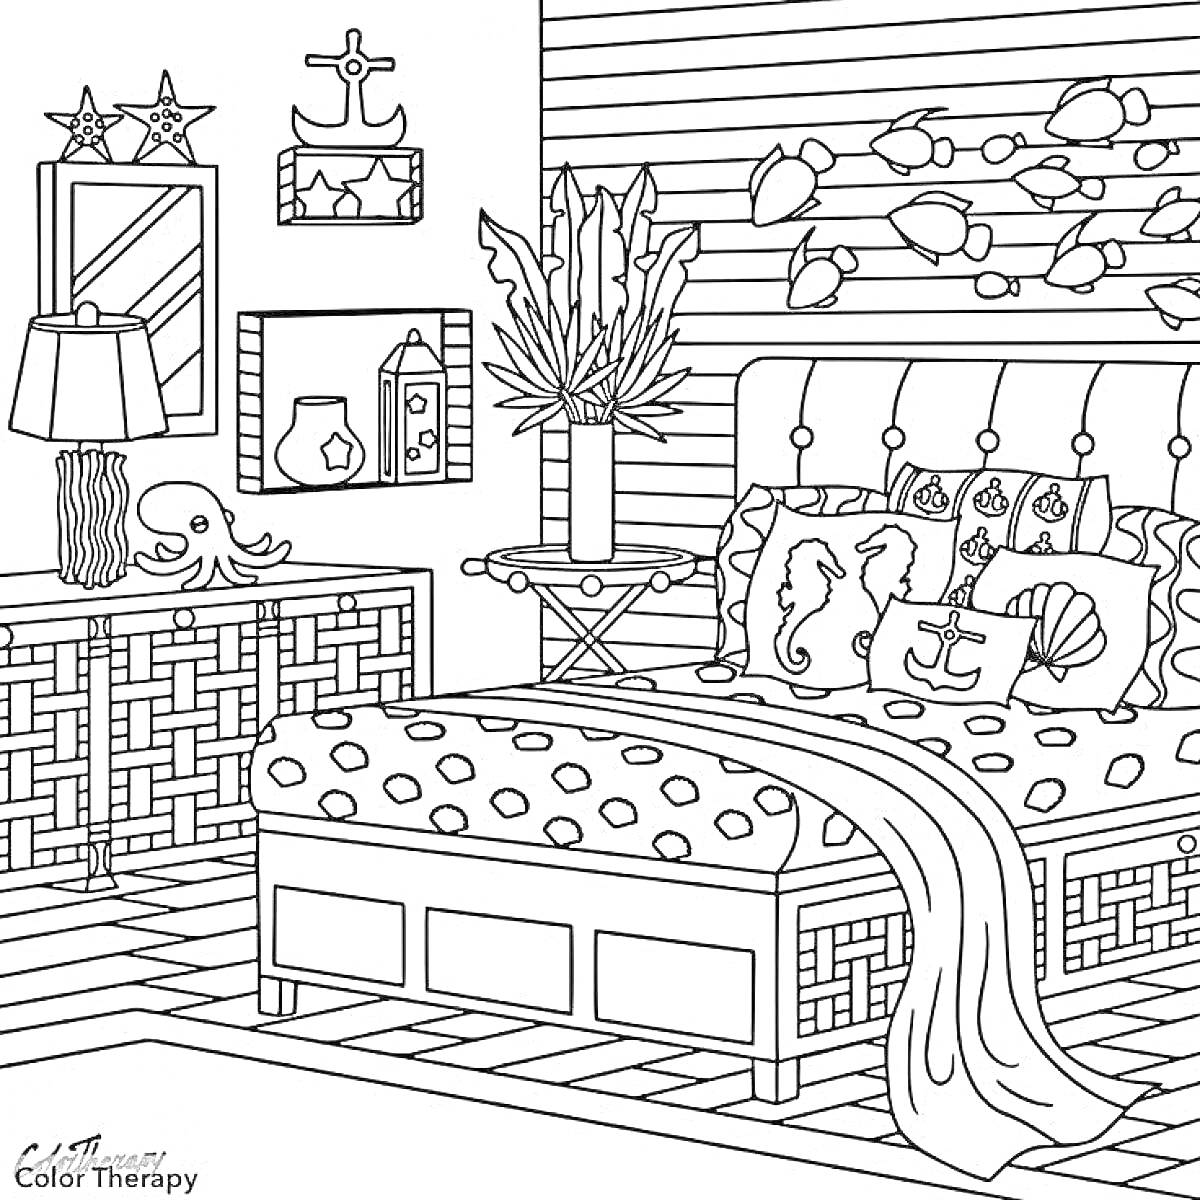 РаскраскаСпальня в морском стиле с кроватью, подушками, комодом, зеркалом, лампой, растением в вазе, корабельными декорациями и стеллажом.